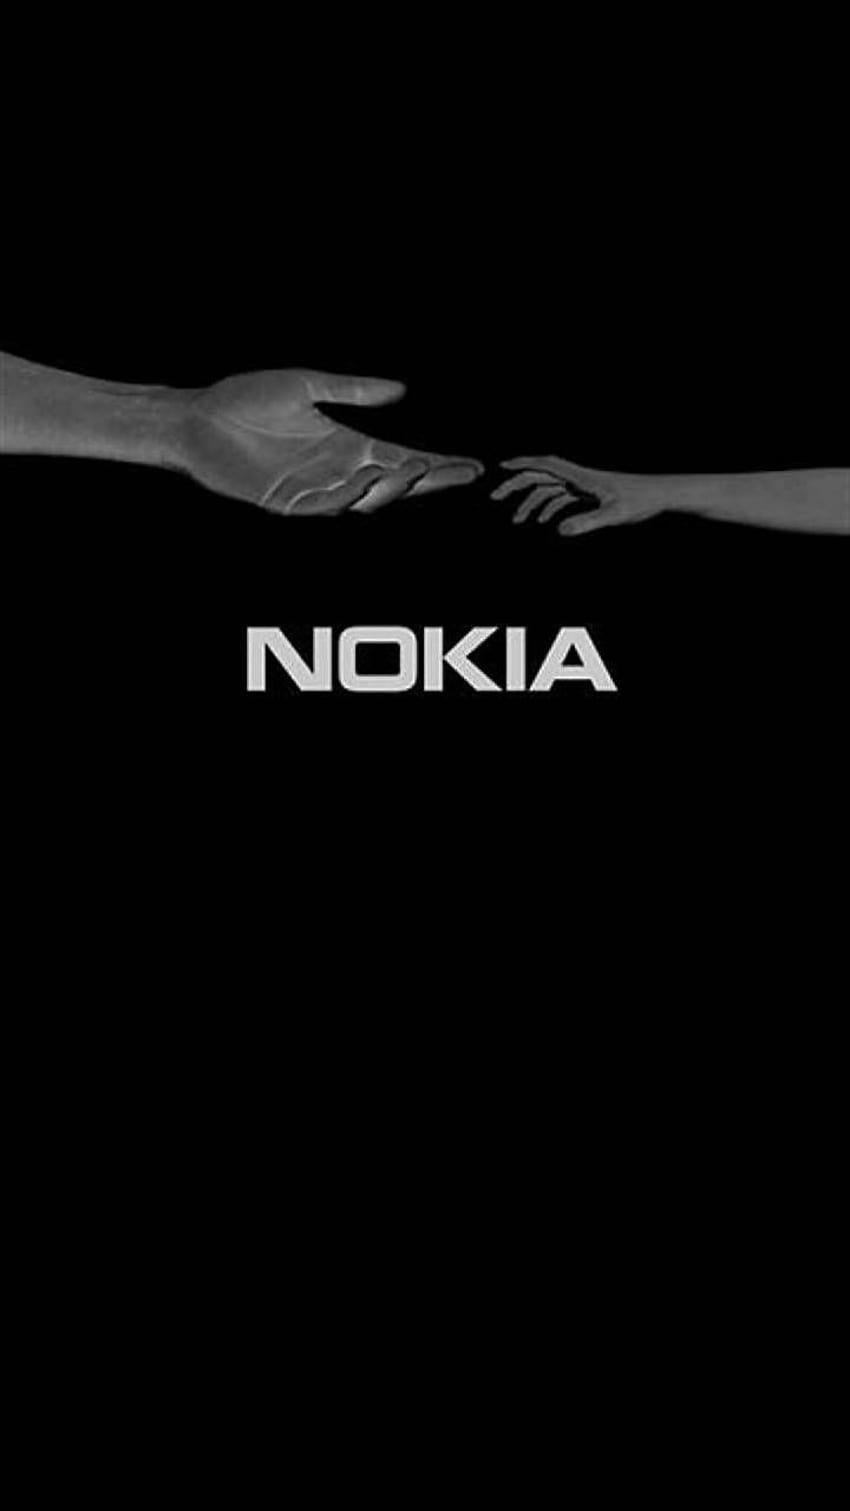 Khám phá những hình nền Nokia độc đáo và đẹp, để mang lại một giá trị cảm xúc cho người sử dụng điện thoại. Cảm nhận được vẻ đẹp của những thiết kế này, bạn sẽ không bao giờ muốn thay đổi hình nền của mình.